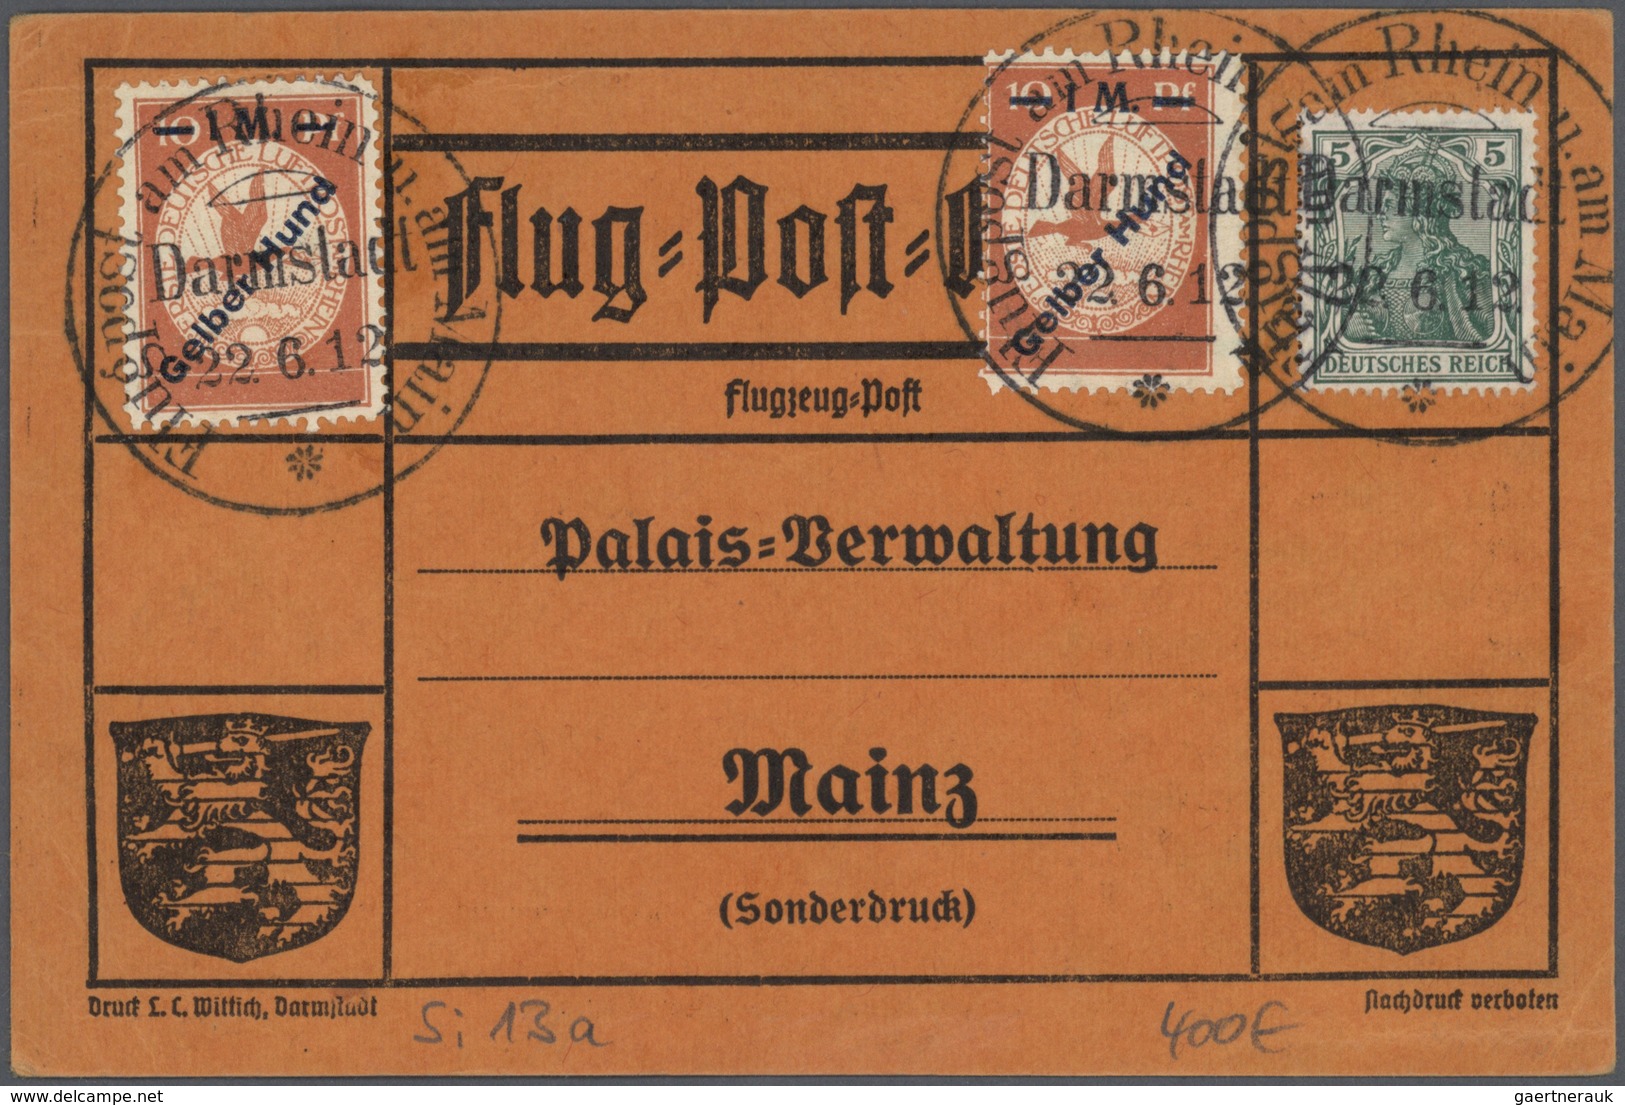 Zeppelinpost Deutschland: 1912/1930, Sammlung von knapp 100 Belegen mit Feldpost/Luftschiffstempel b